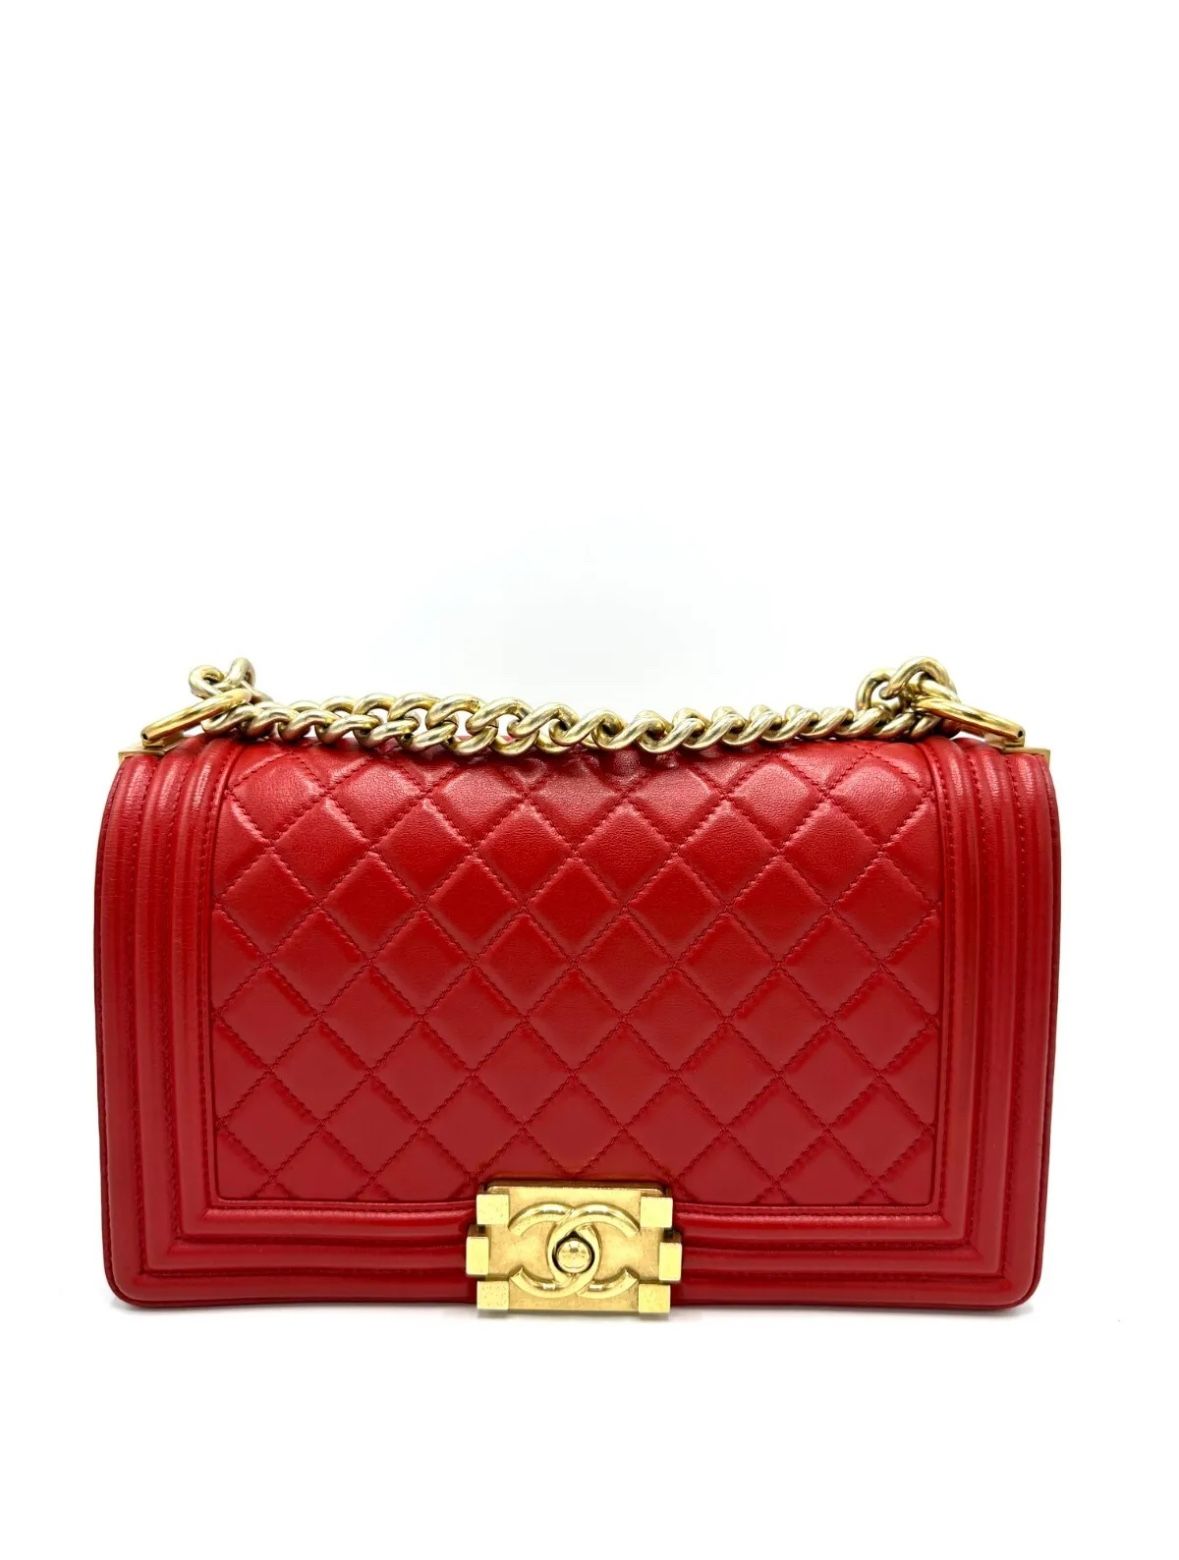 Chanel Red Lambskin GHW Medium Boy Bag